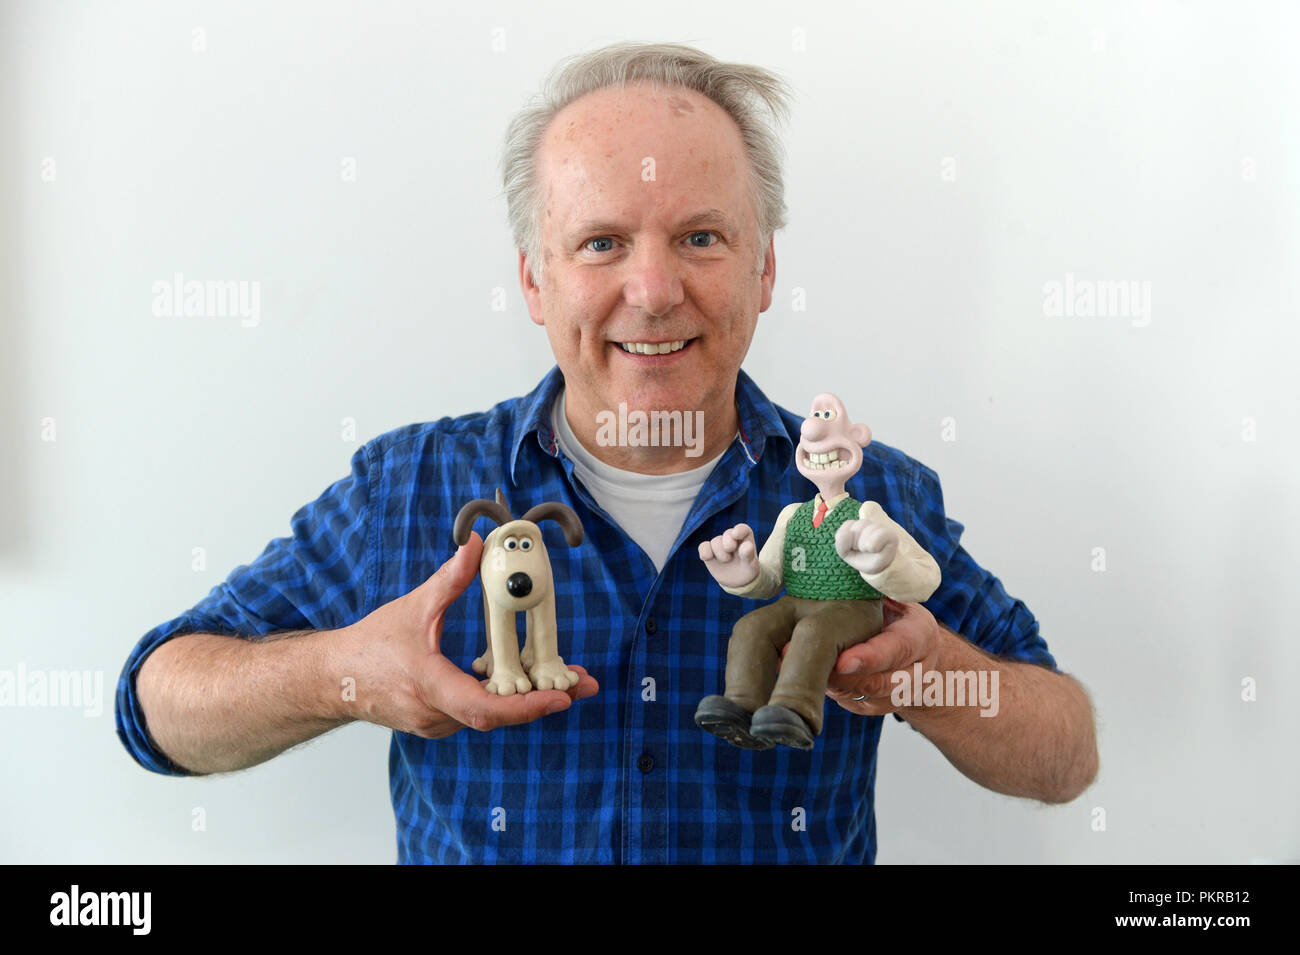 Nick Park directeur animateur et producteur et créateur de Wallace et Gromit et Shaun le mouton Shetland au scénario 2018 de donner une entrevue à la presse Banque D'Images